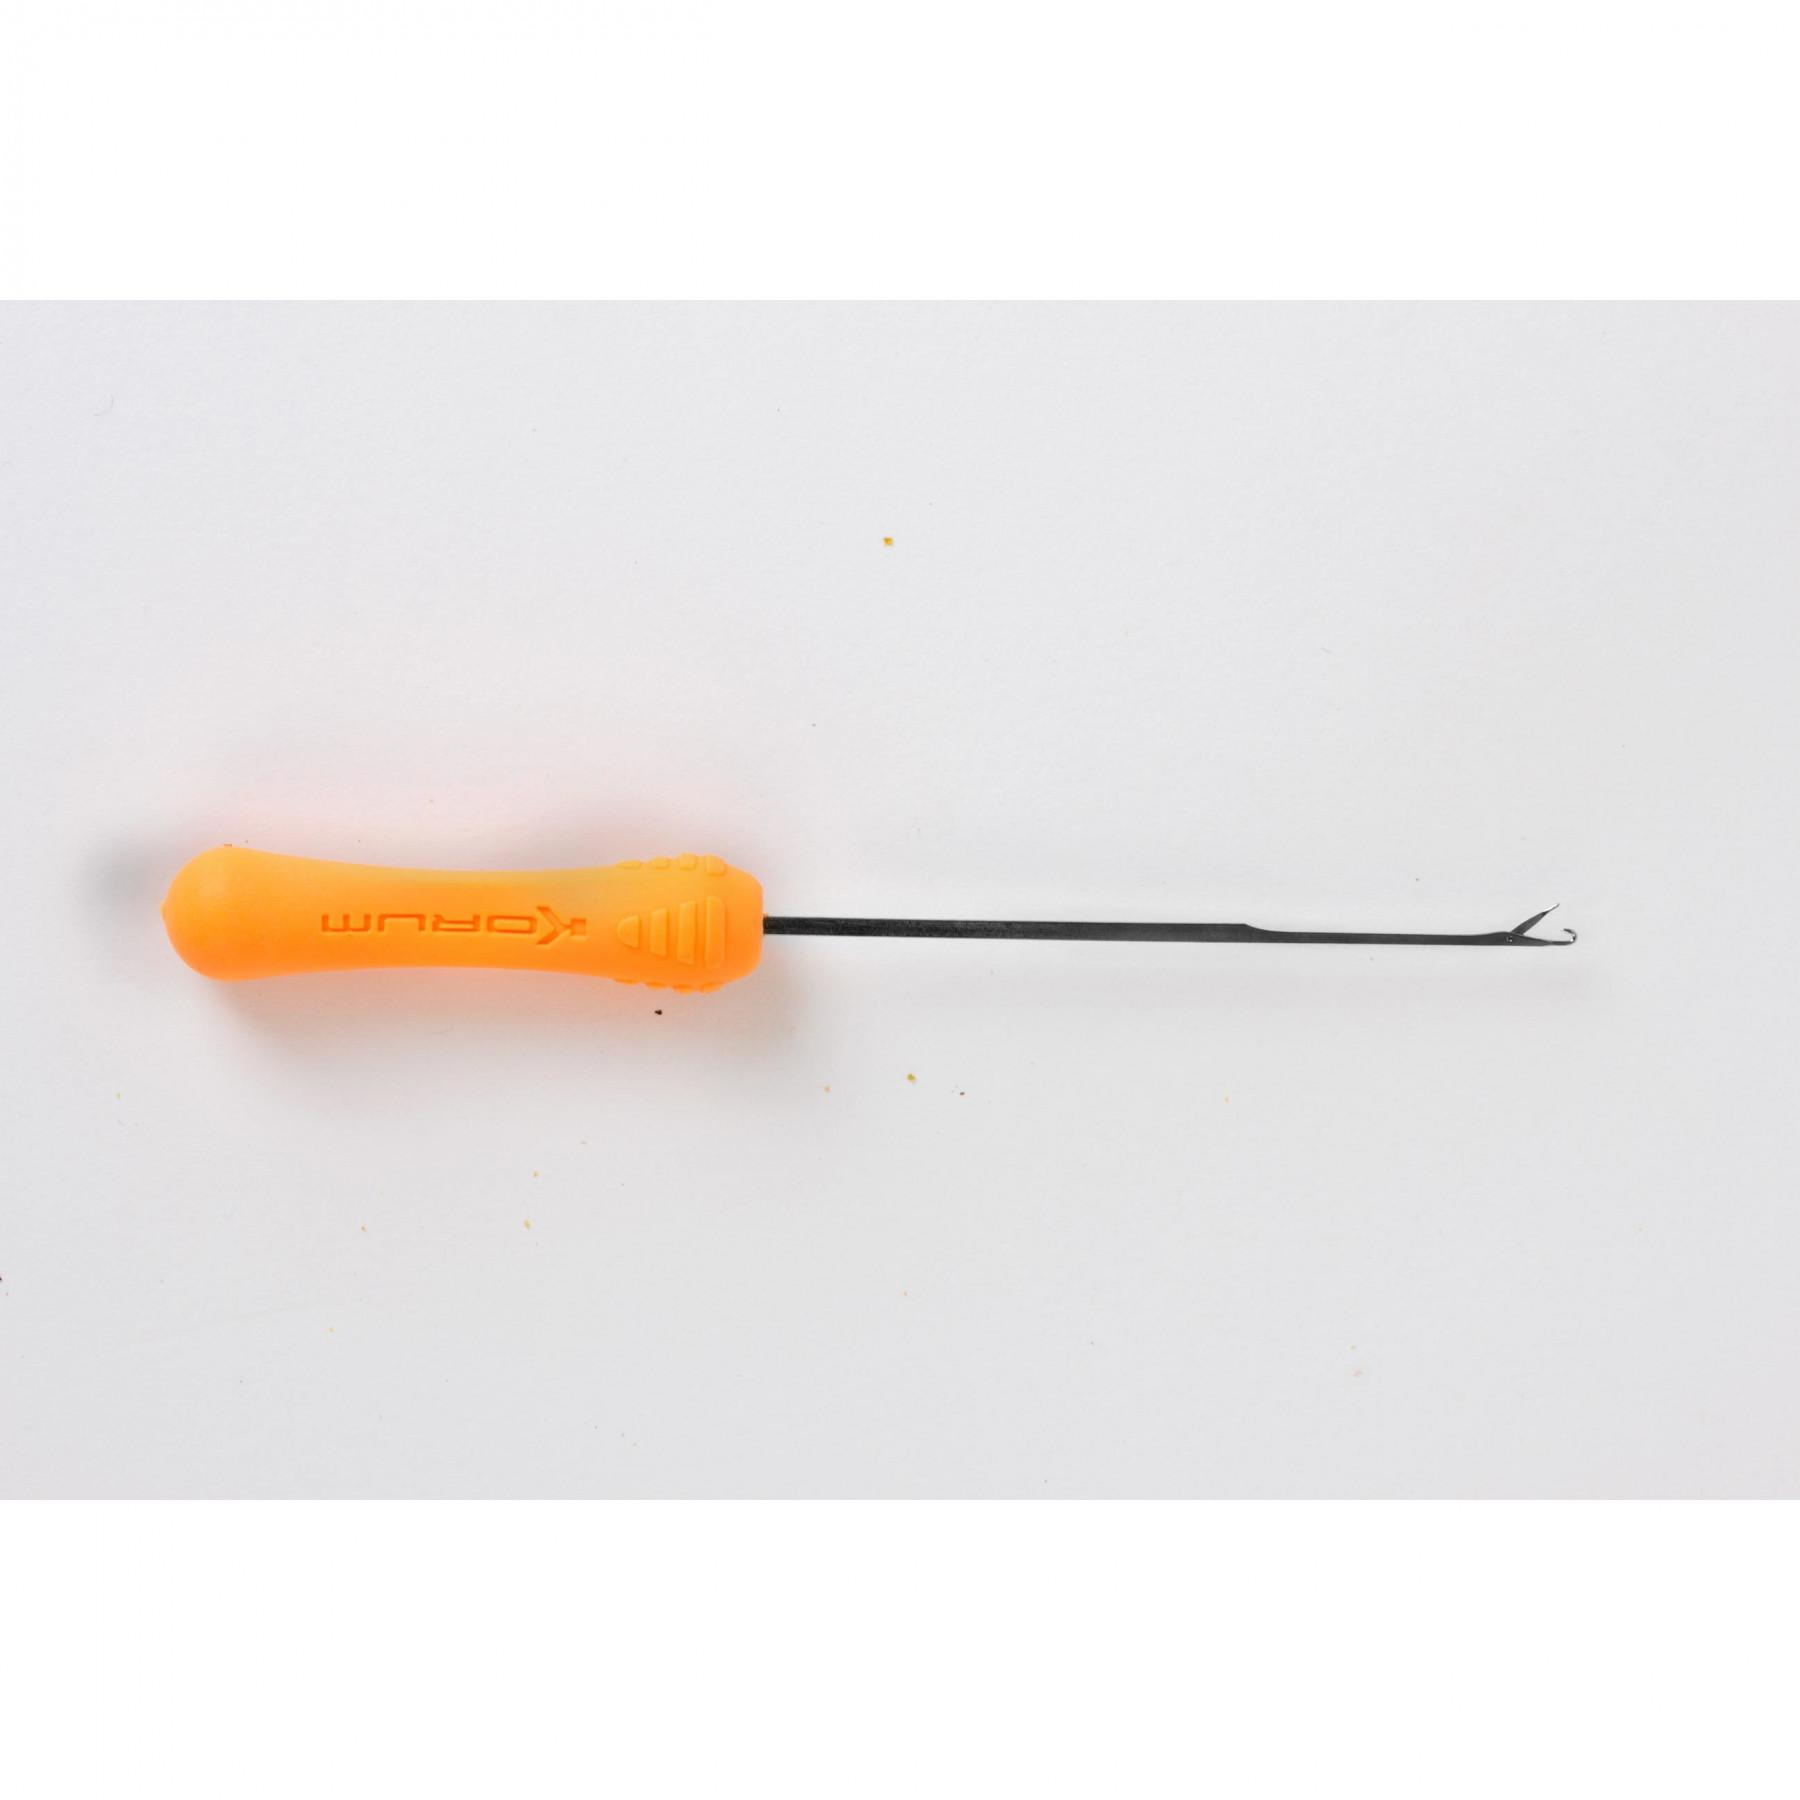 Priming gereedschap Korum Xpert Gated Needle